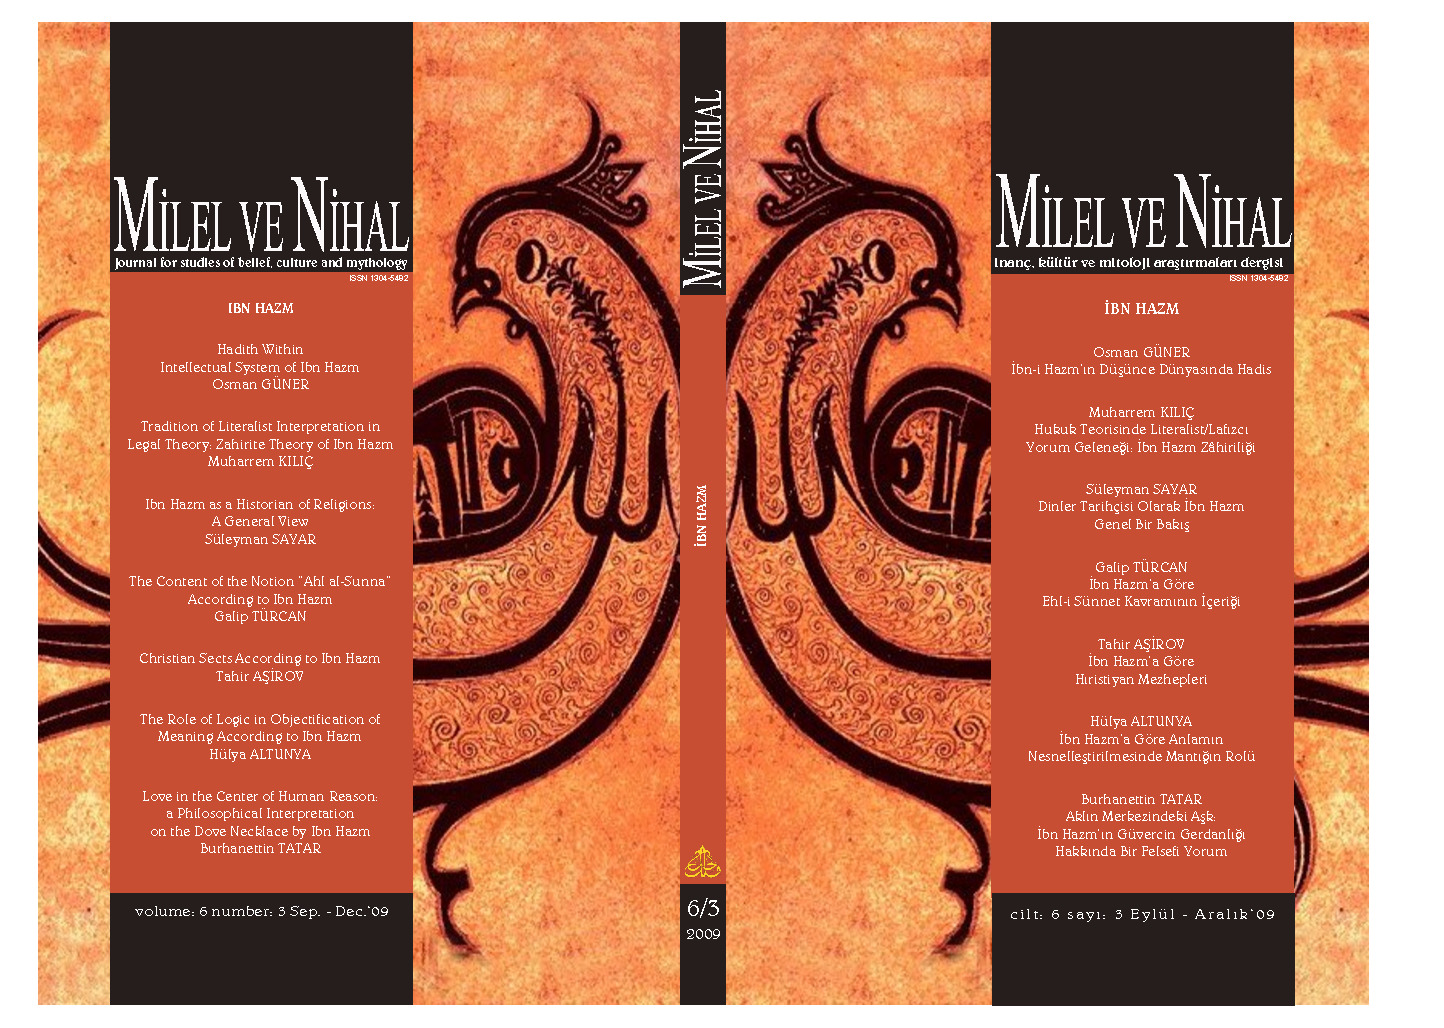 Milel Ve Nihal-Inanc-Kültür-Mitoloji Araşdırmaları Dergisi-6.Say-Ibn Hezm-2009-182s